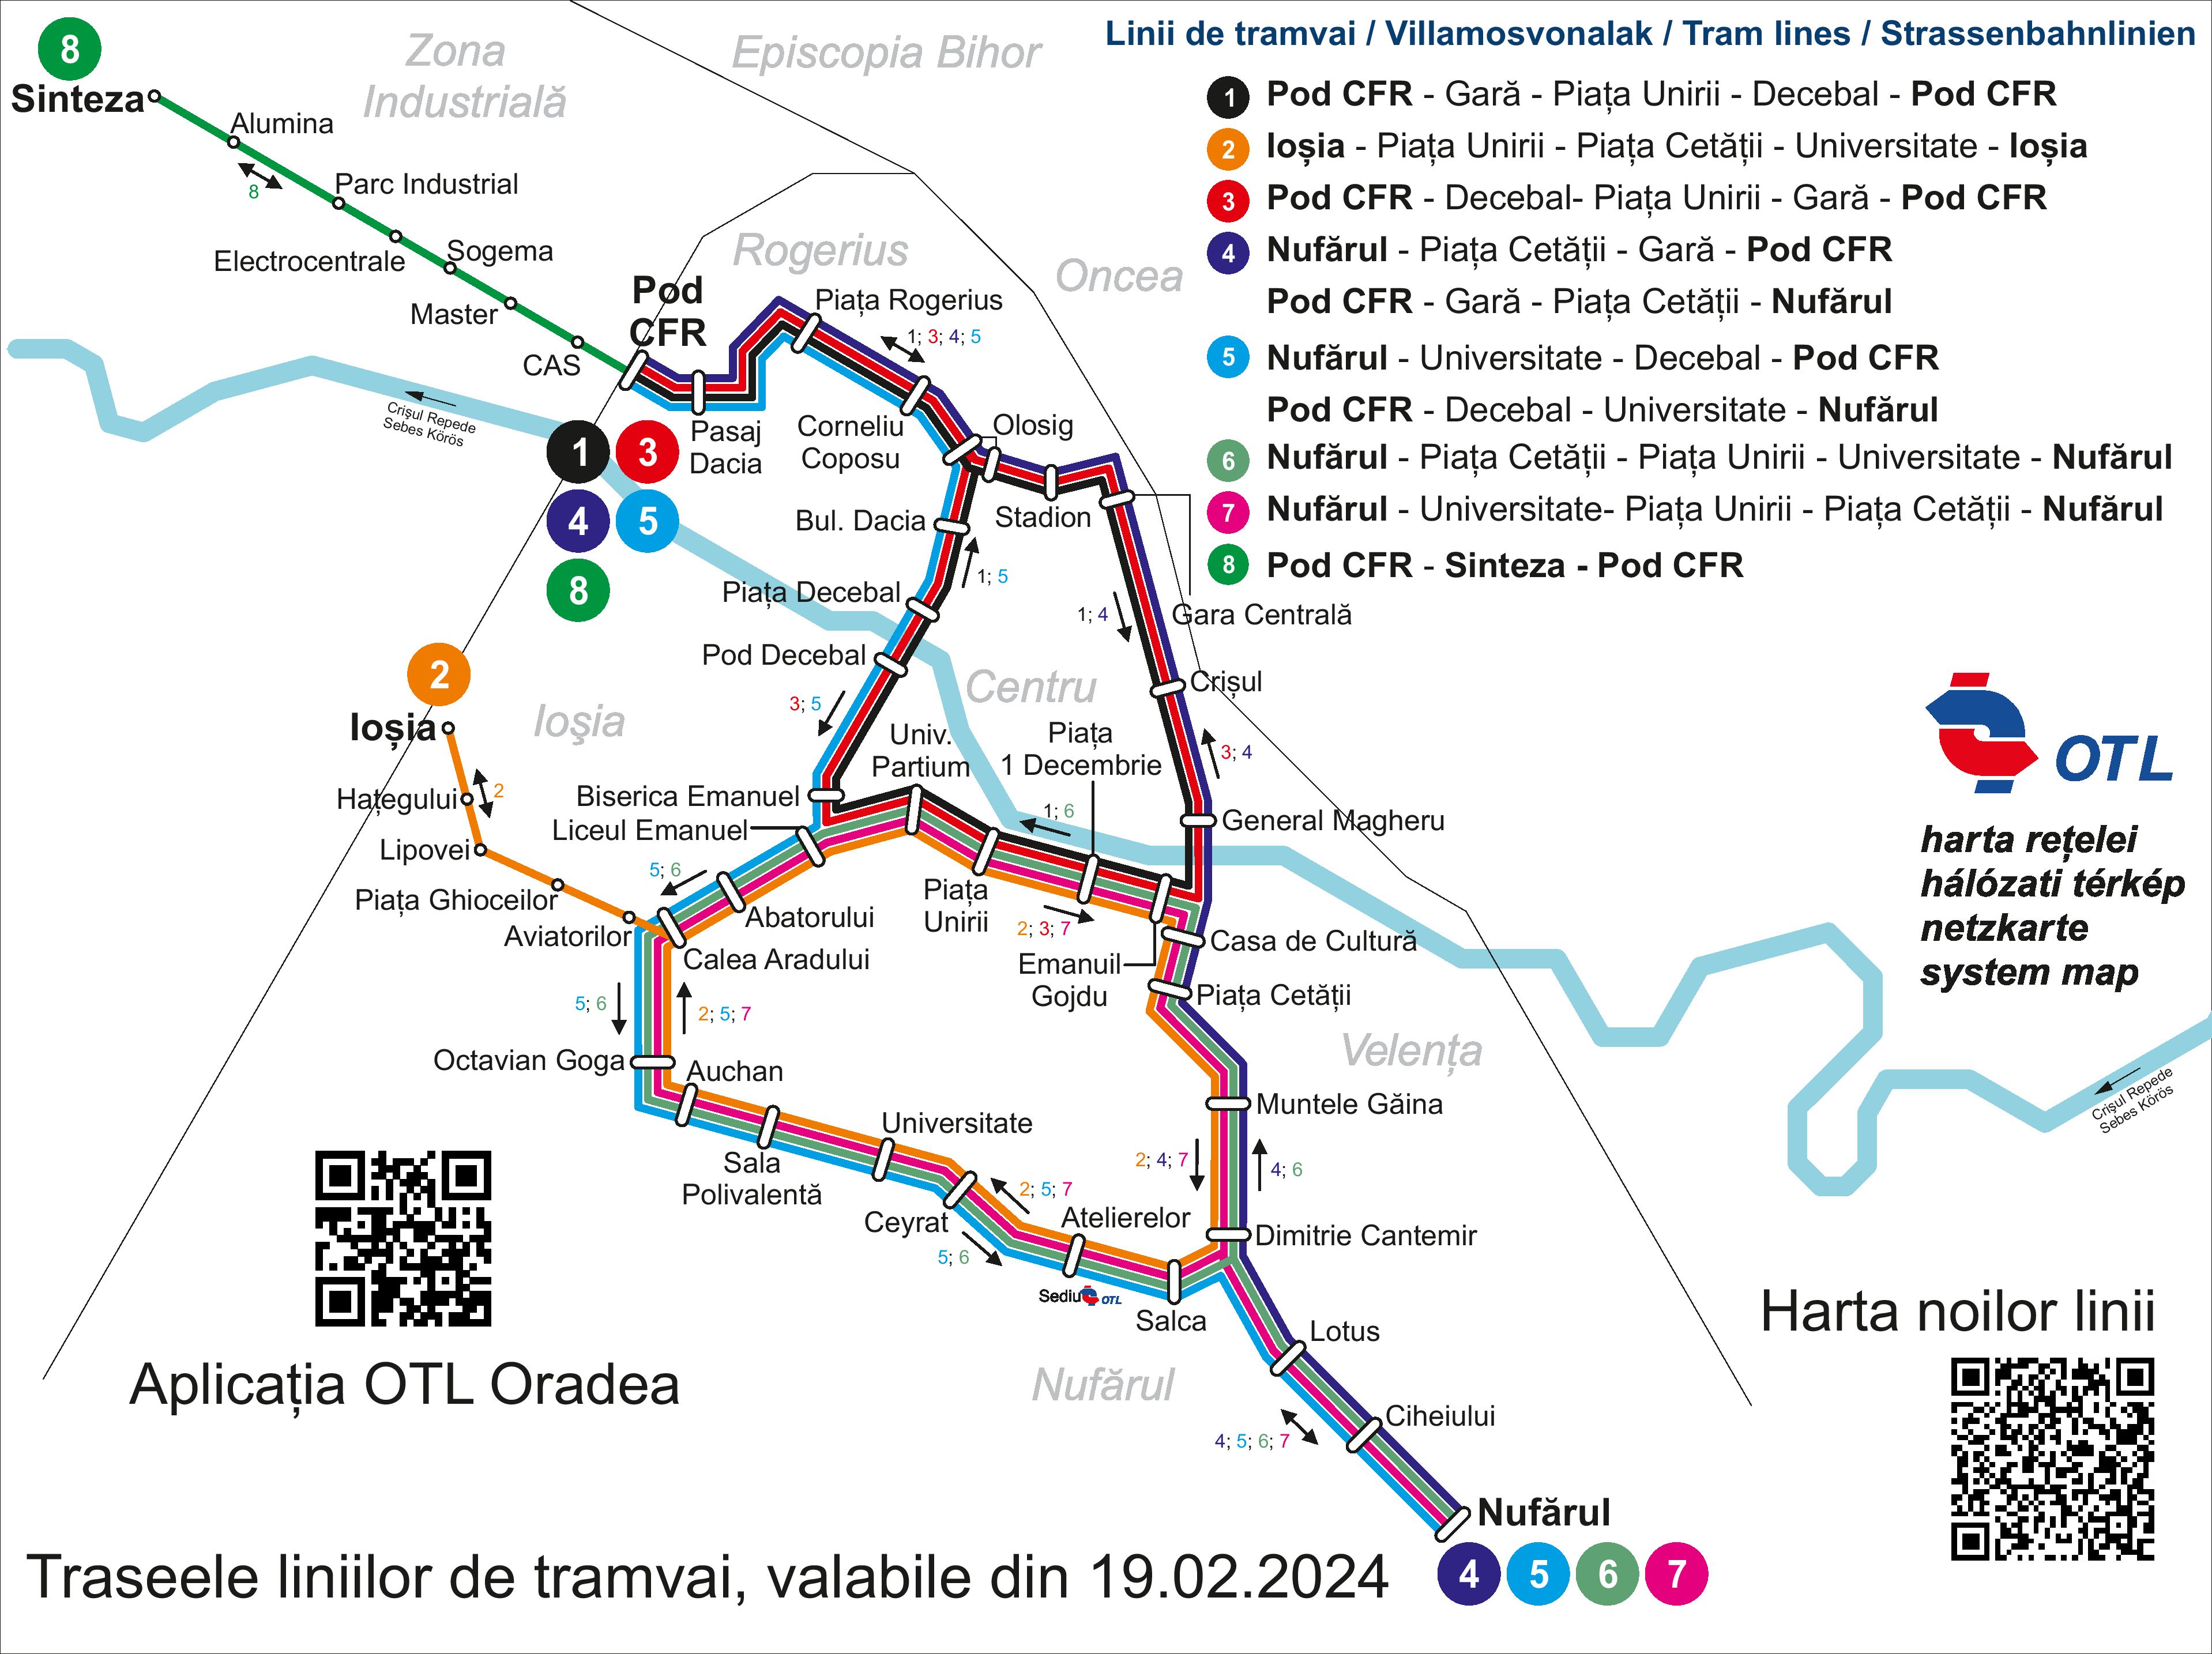 harta OTL 20240214 tramvaie